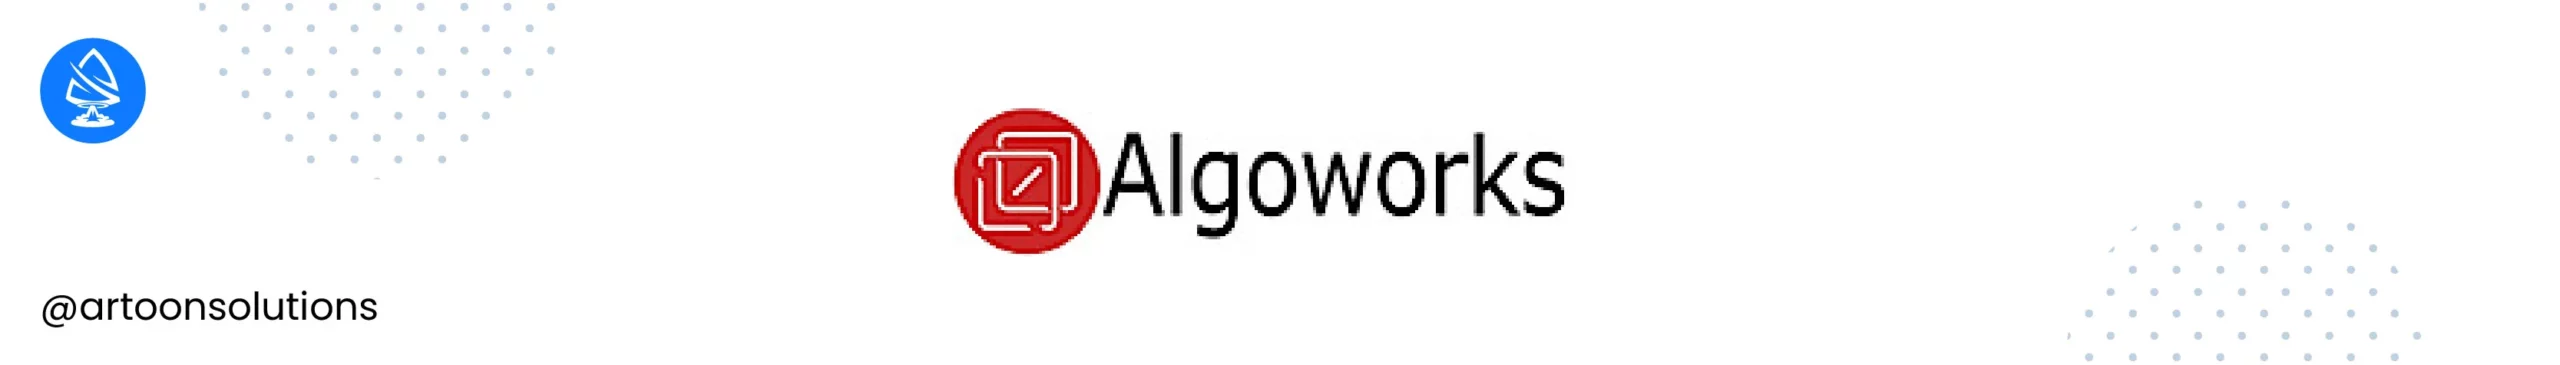 Algoworks - React js development companies